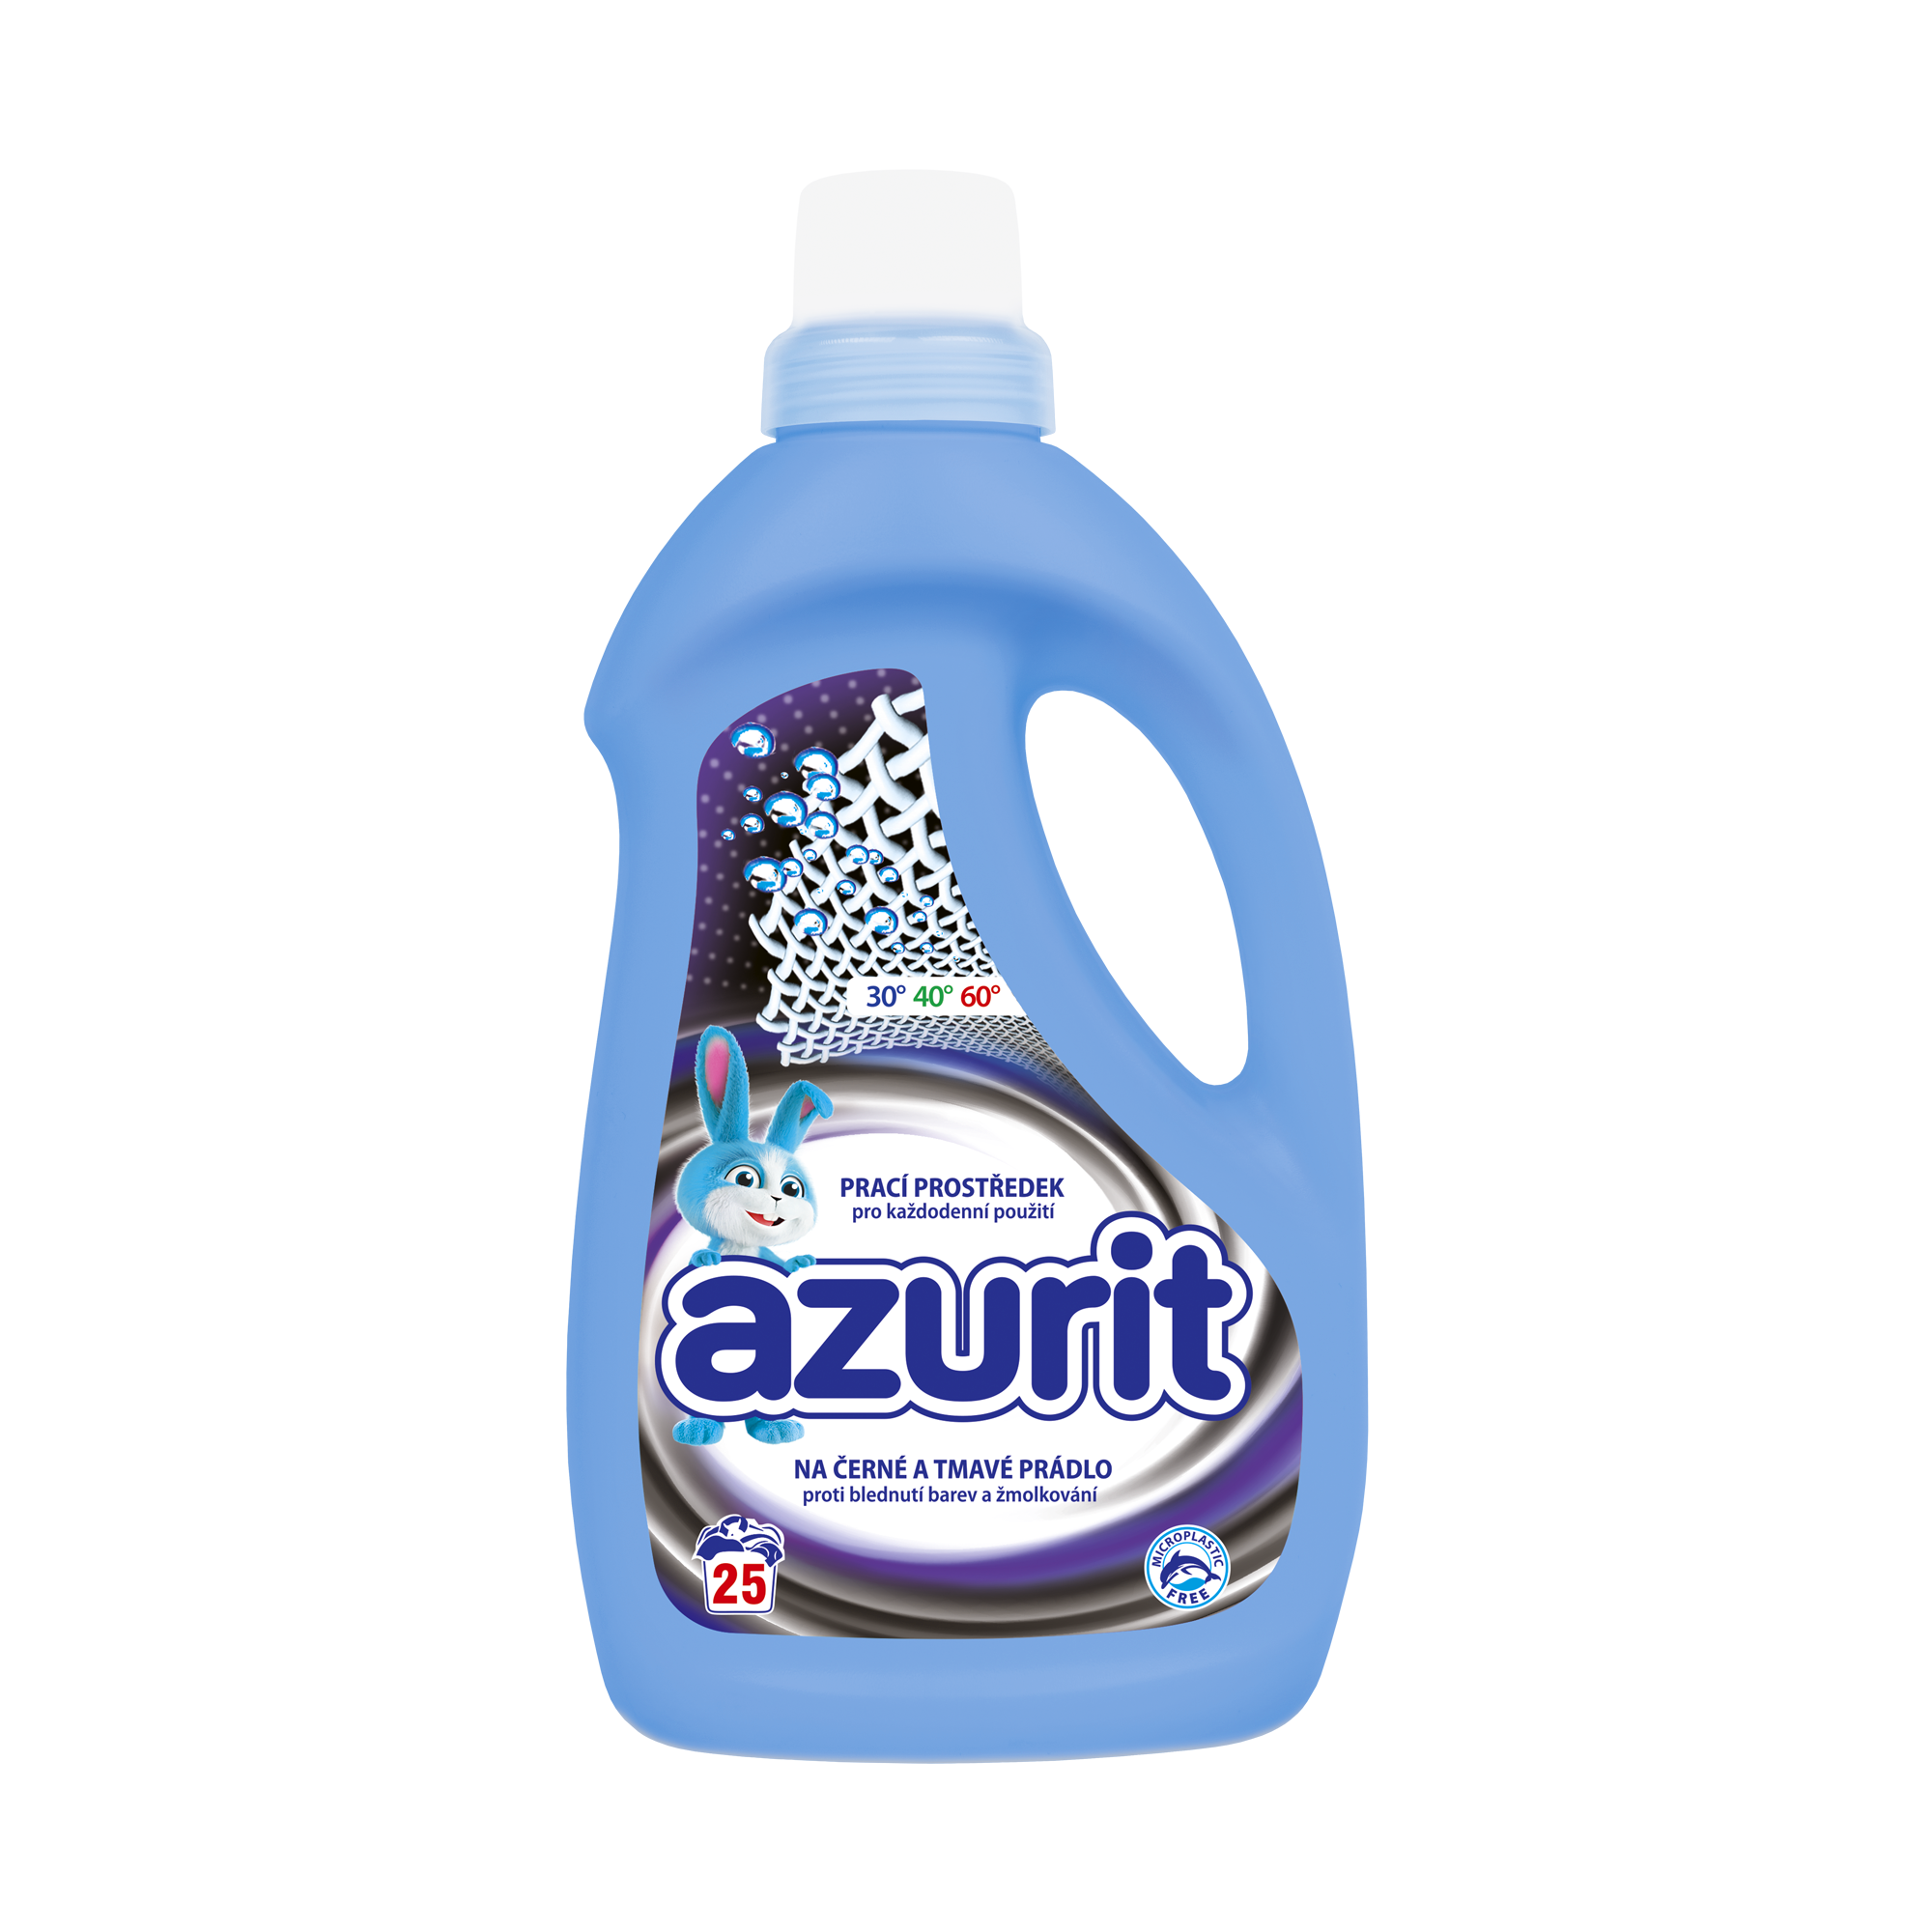 Azurit-1l-cerne